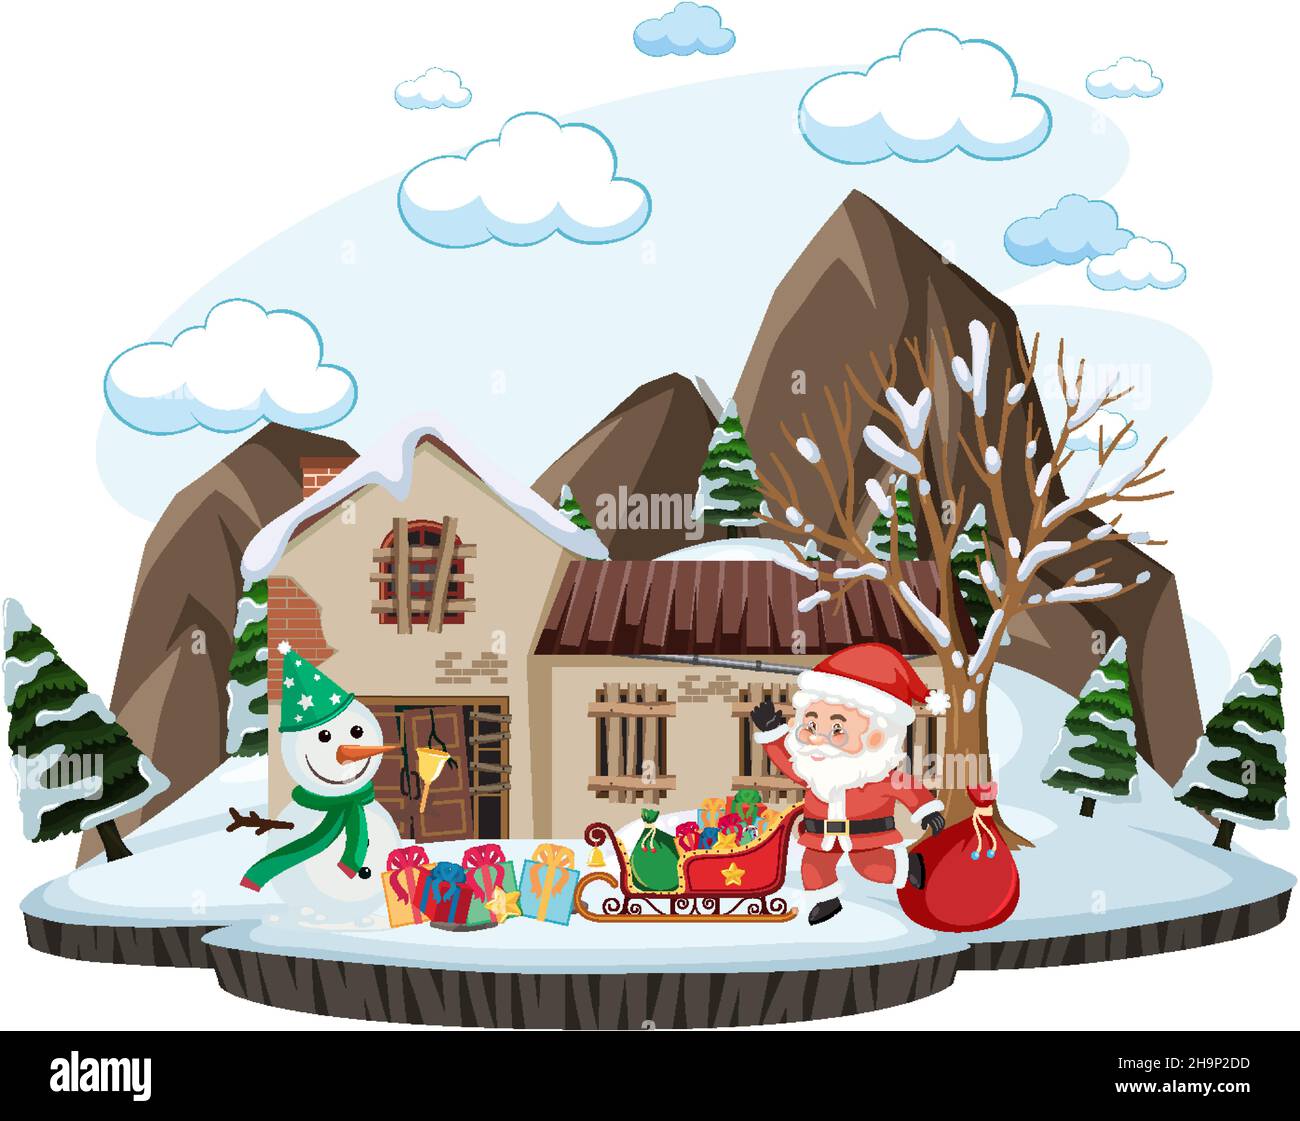 Santa claus riding a sleigh illustration Stock Vector